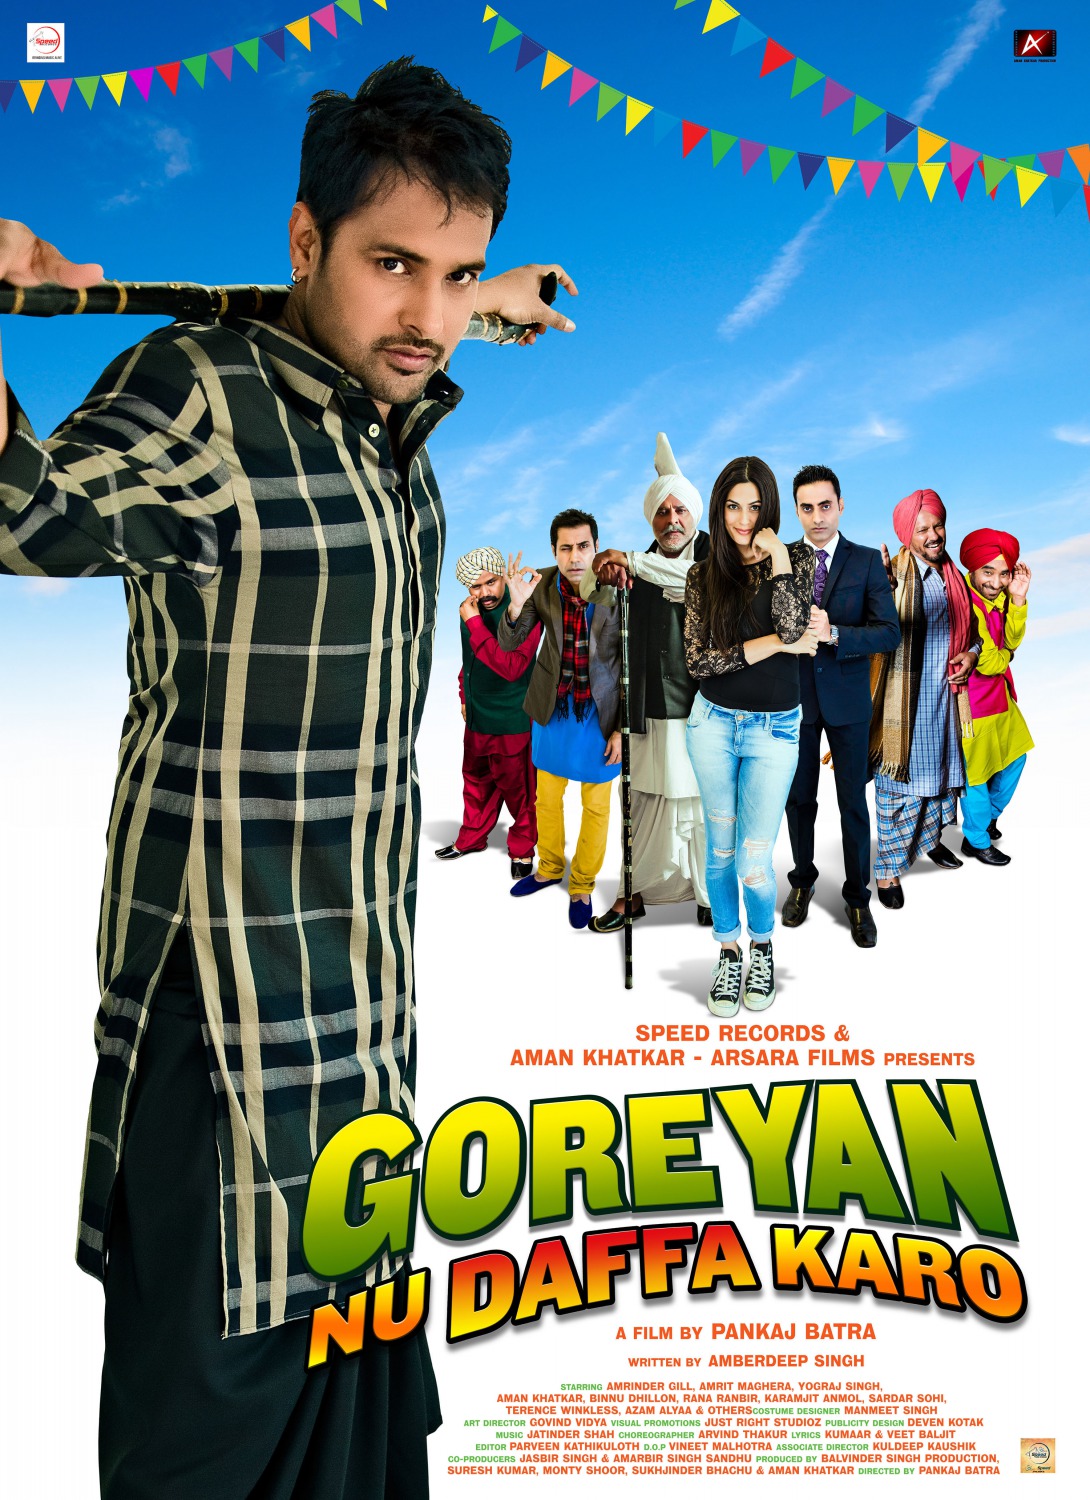 Extra Large Movie Poster Image for Goreyan Nu Daffa Karo (#1 of 3)